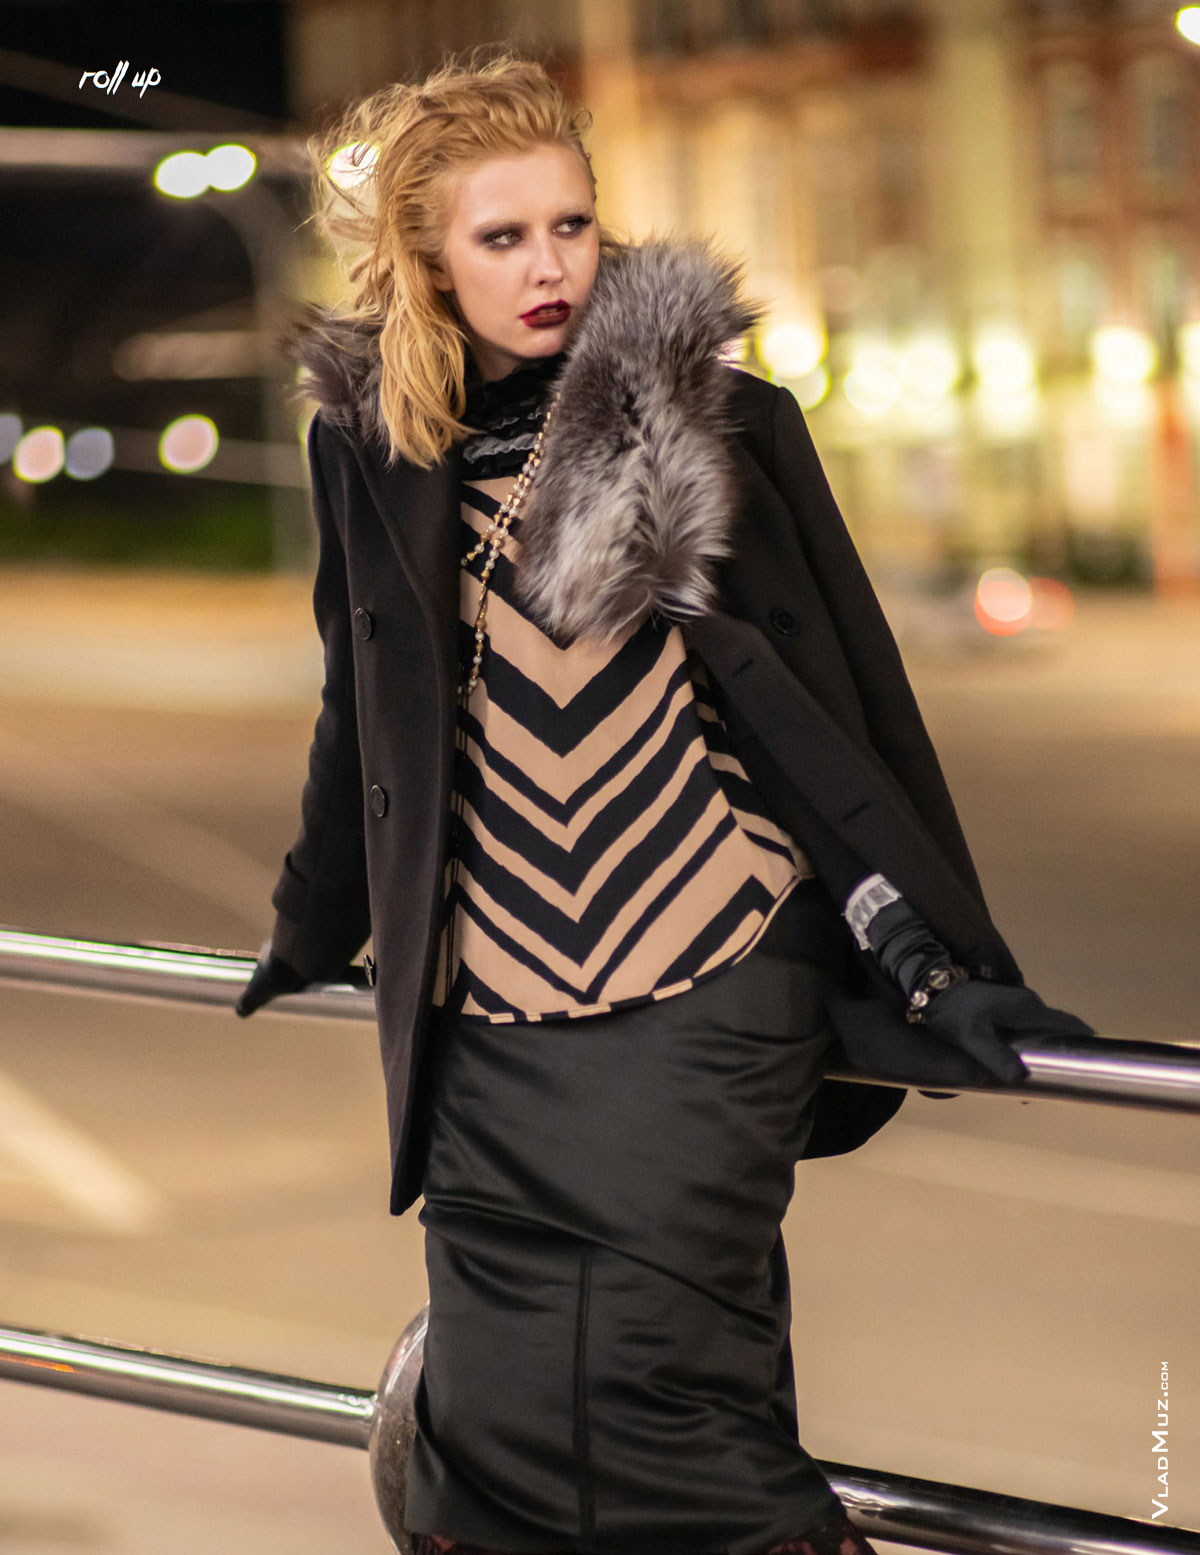 Фото девушки на фоне ночного города из серии модных фотографий для журнала Roll Up Magazine